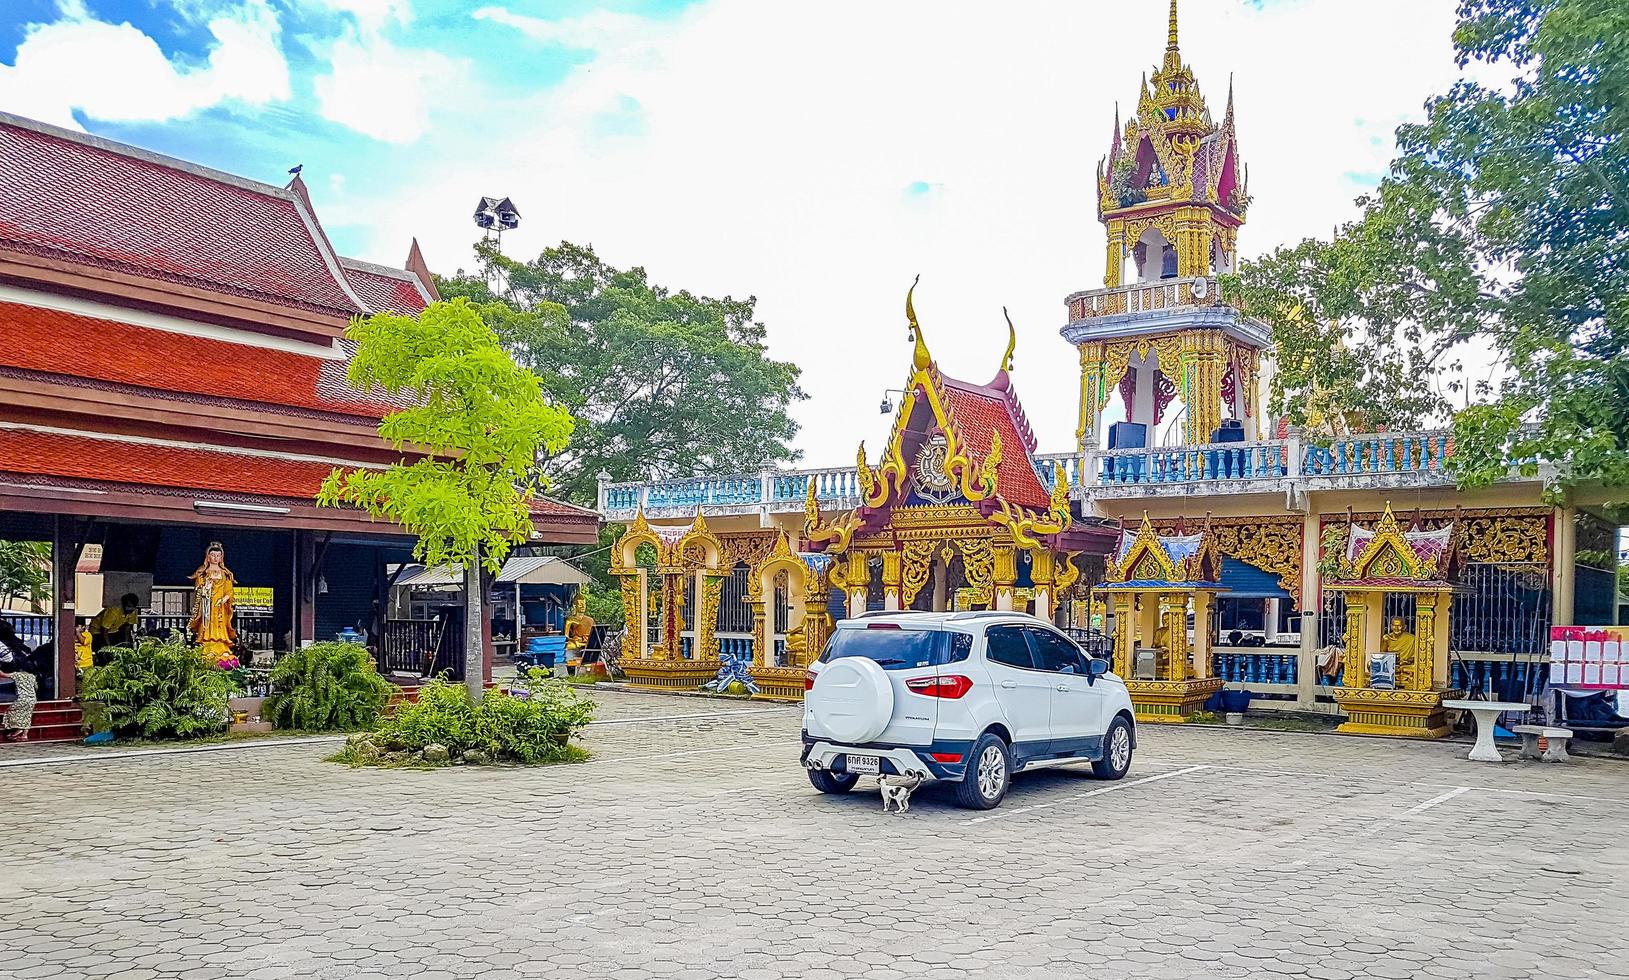 färgstark arkitektur på wat plai laem -templet på Koh Samui -ön, Thailand, 2018 foto